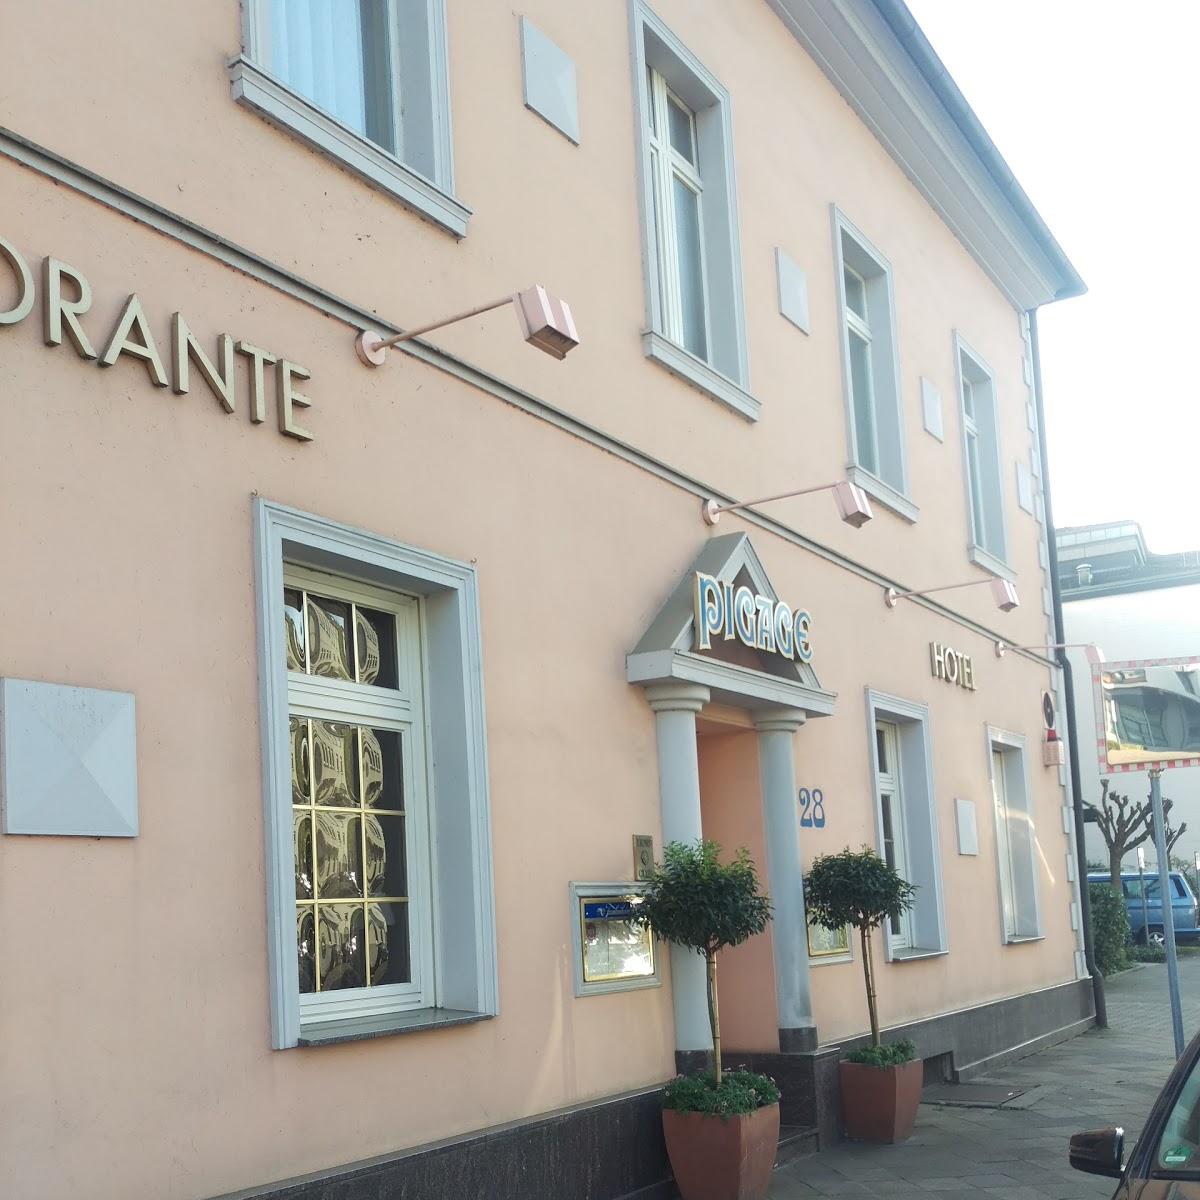 Restaurant "Pigage" in Düsseldorf